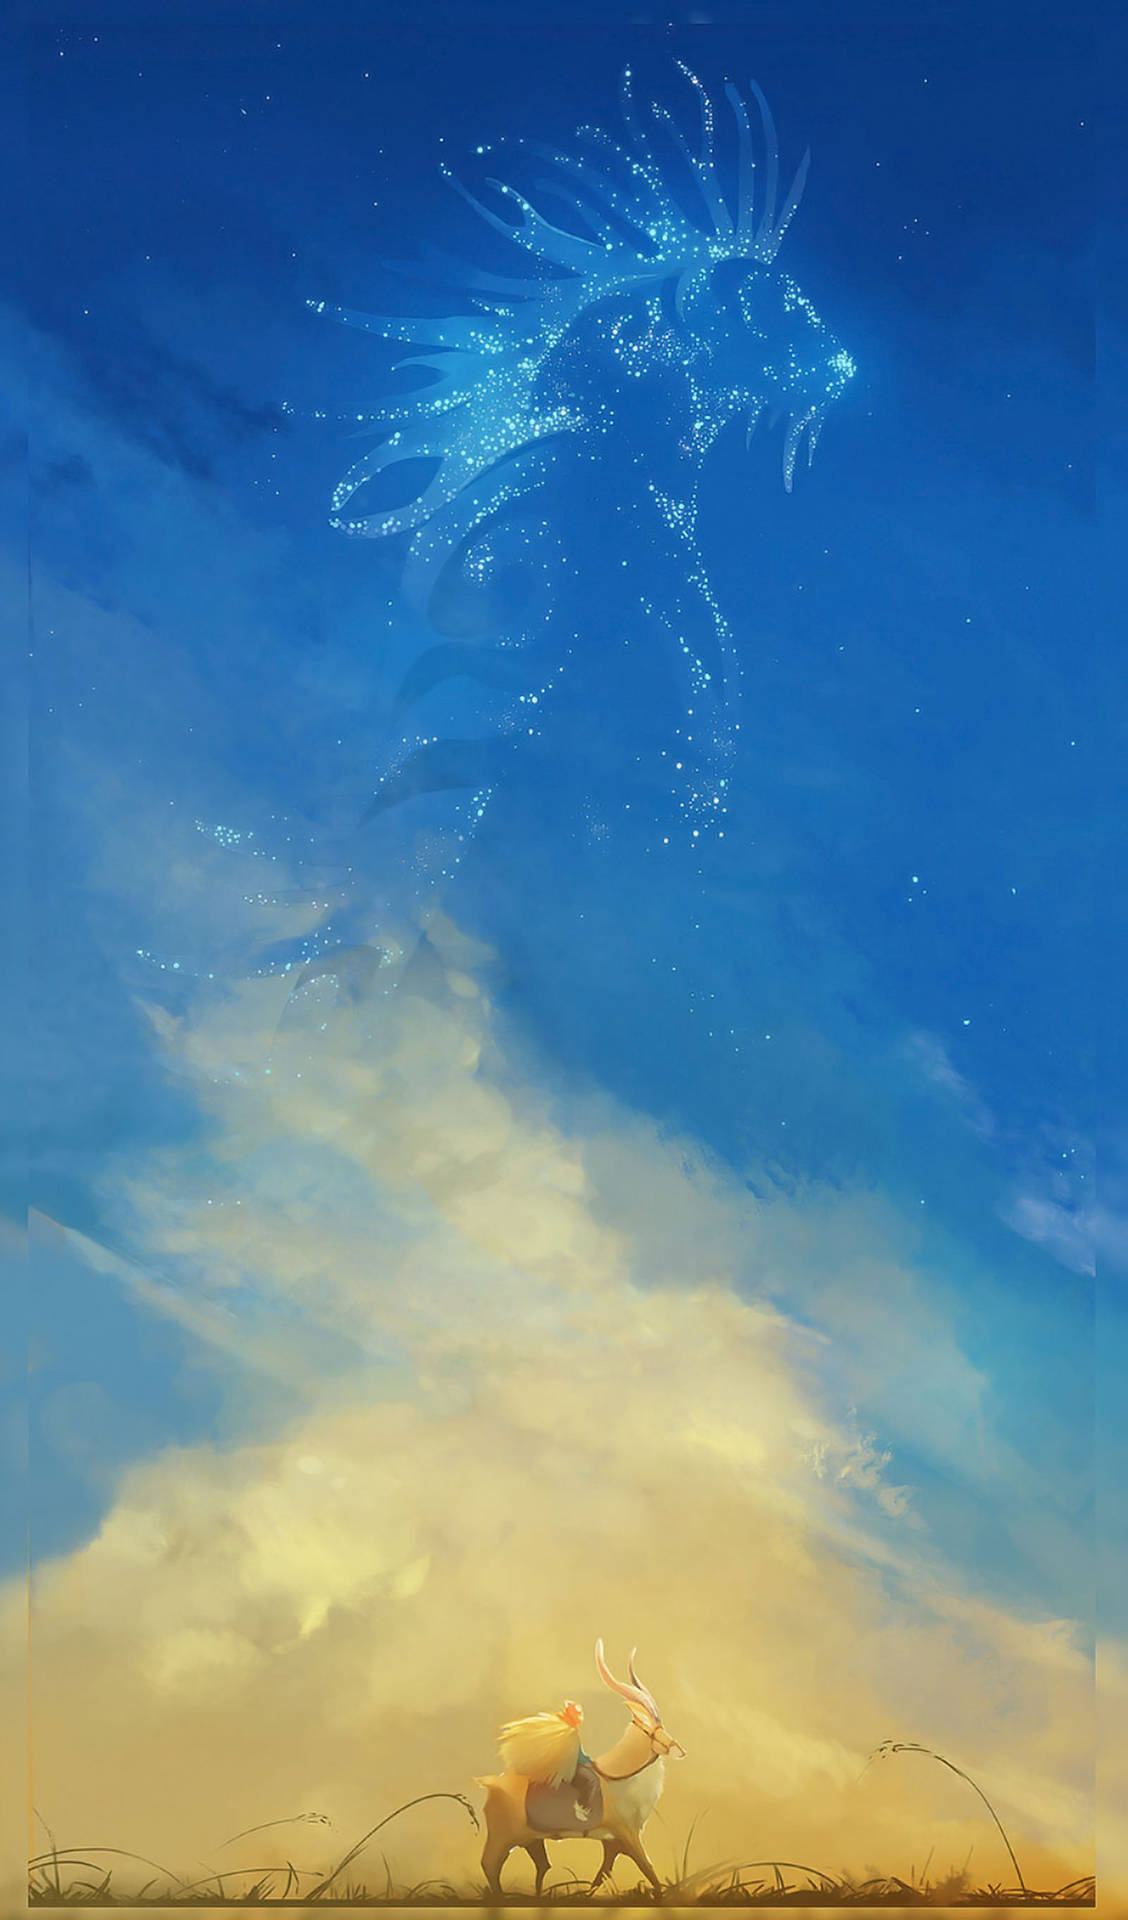 Verleihensie Ihrem Iphone Mit Diesem Design, Das Von Studio Ghibli Inspiriert Ist, Eine Einzigartige Und Magische Note. Wallpaper